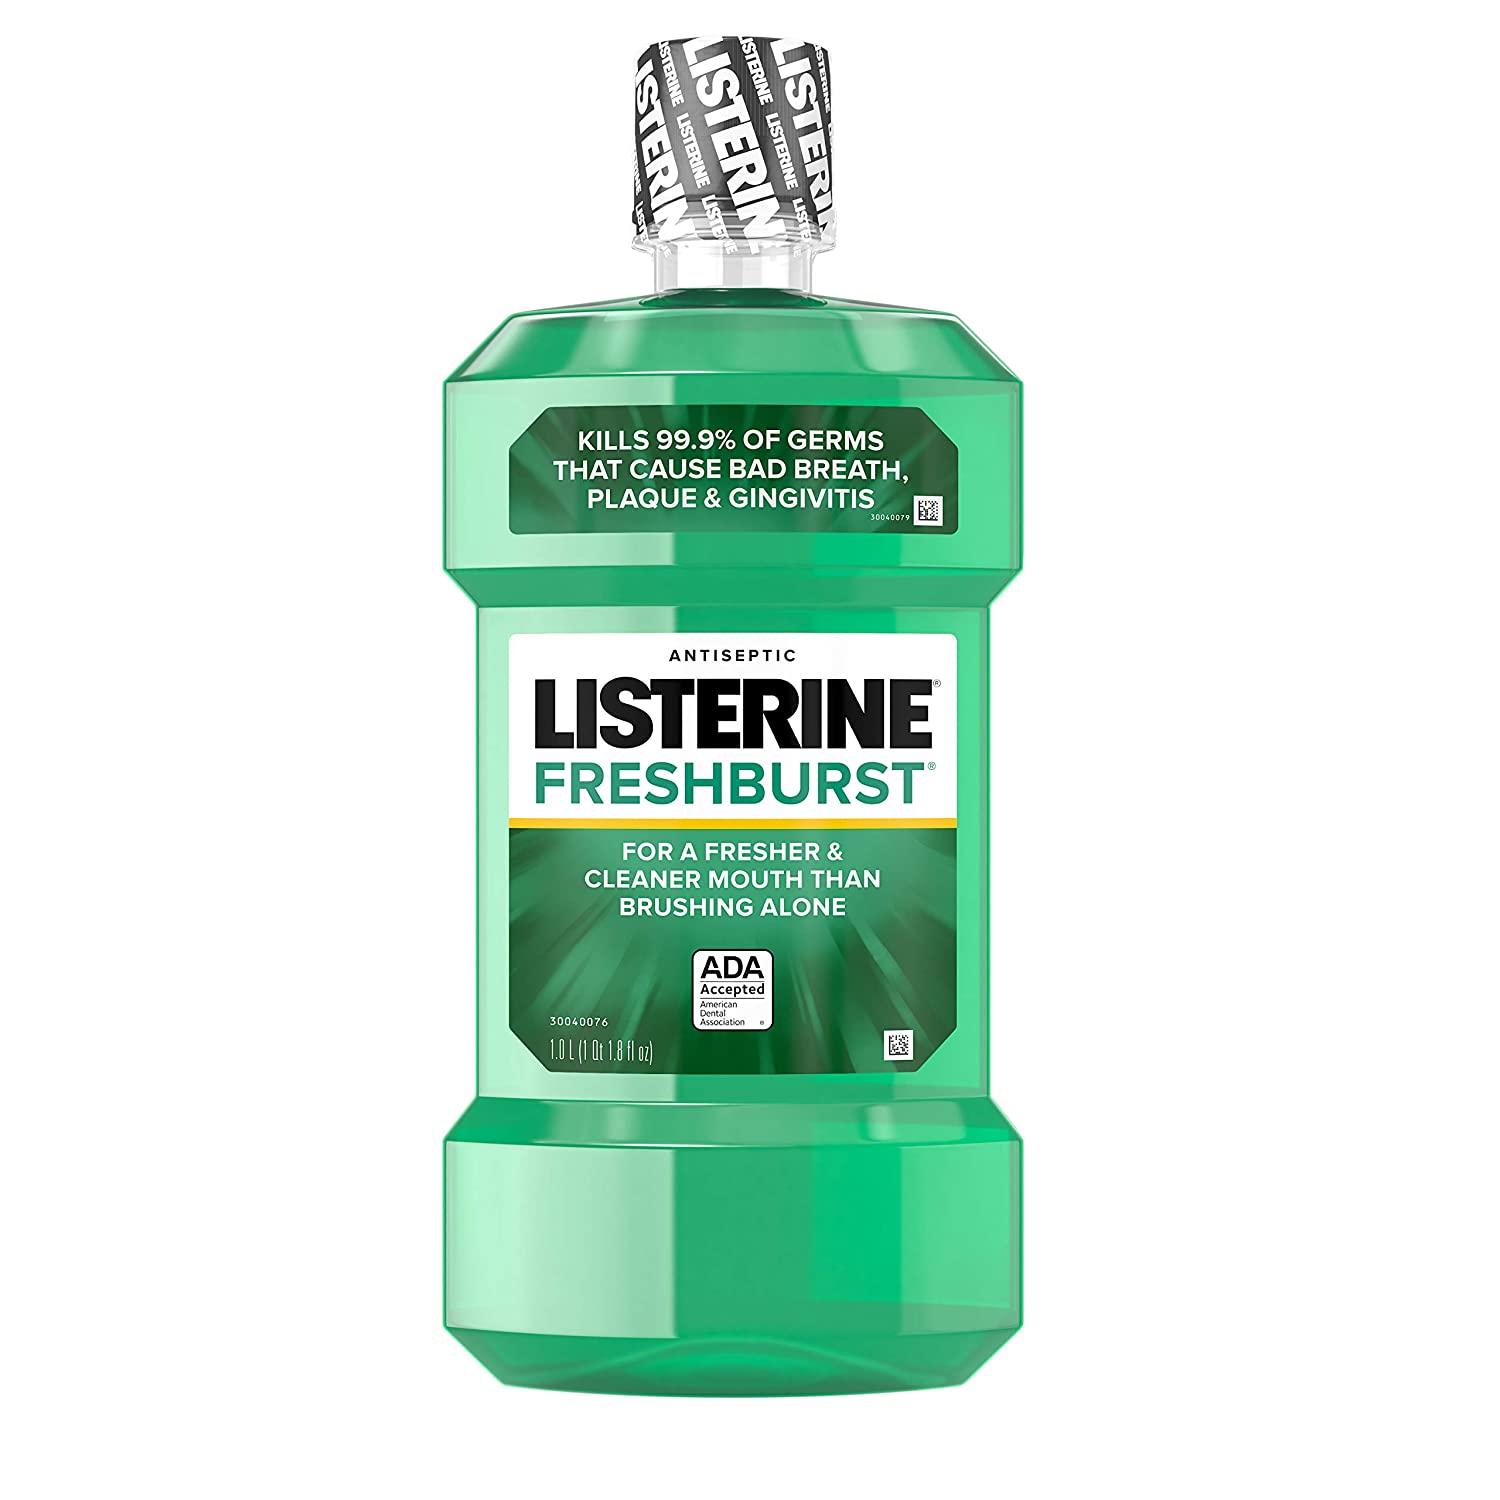 Listerine Antiseptic Mouthwash Fresh Burst for $3.58 Shipped